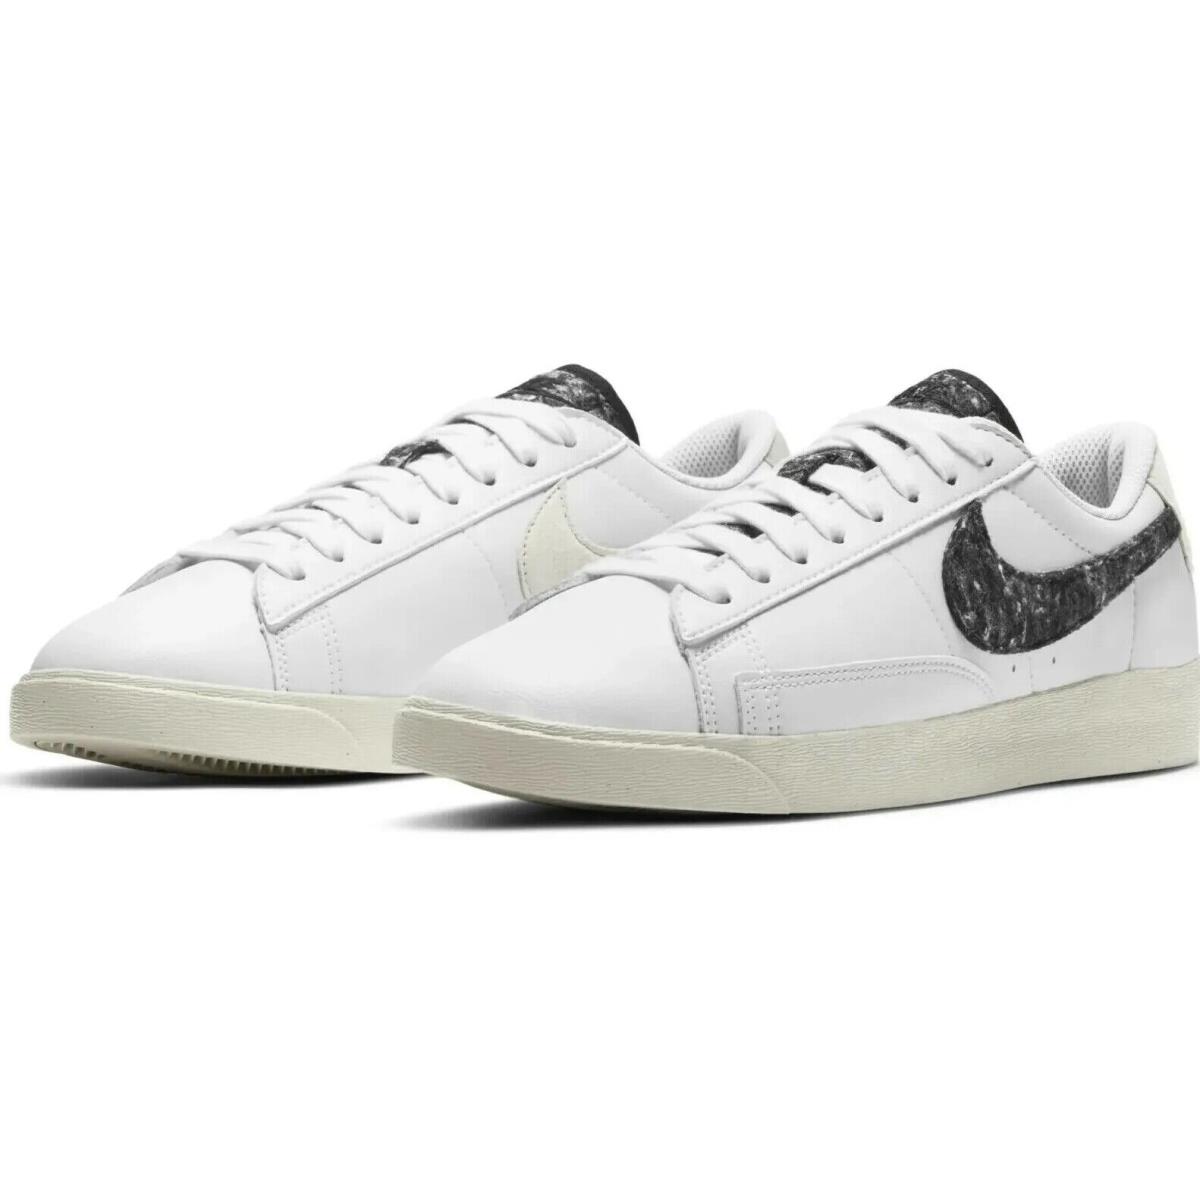 Nike Blazer Low SE Womens Size 7 Sneakers Shoes DA4934 100 White Black Wool